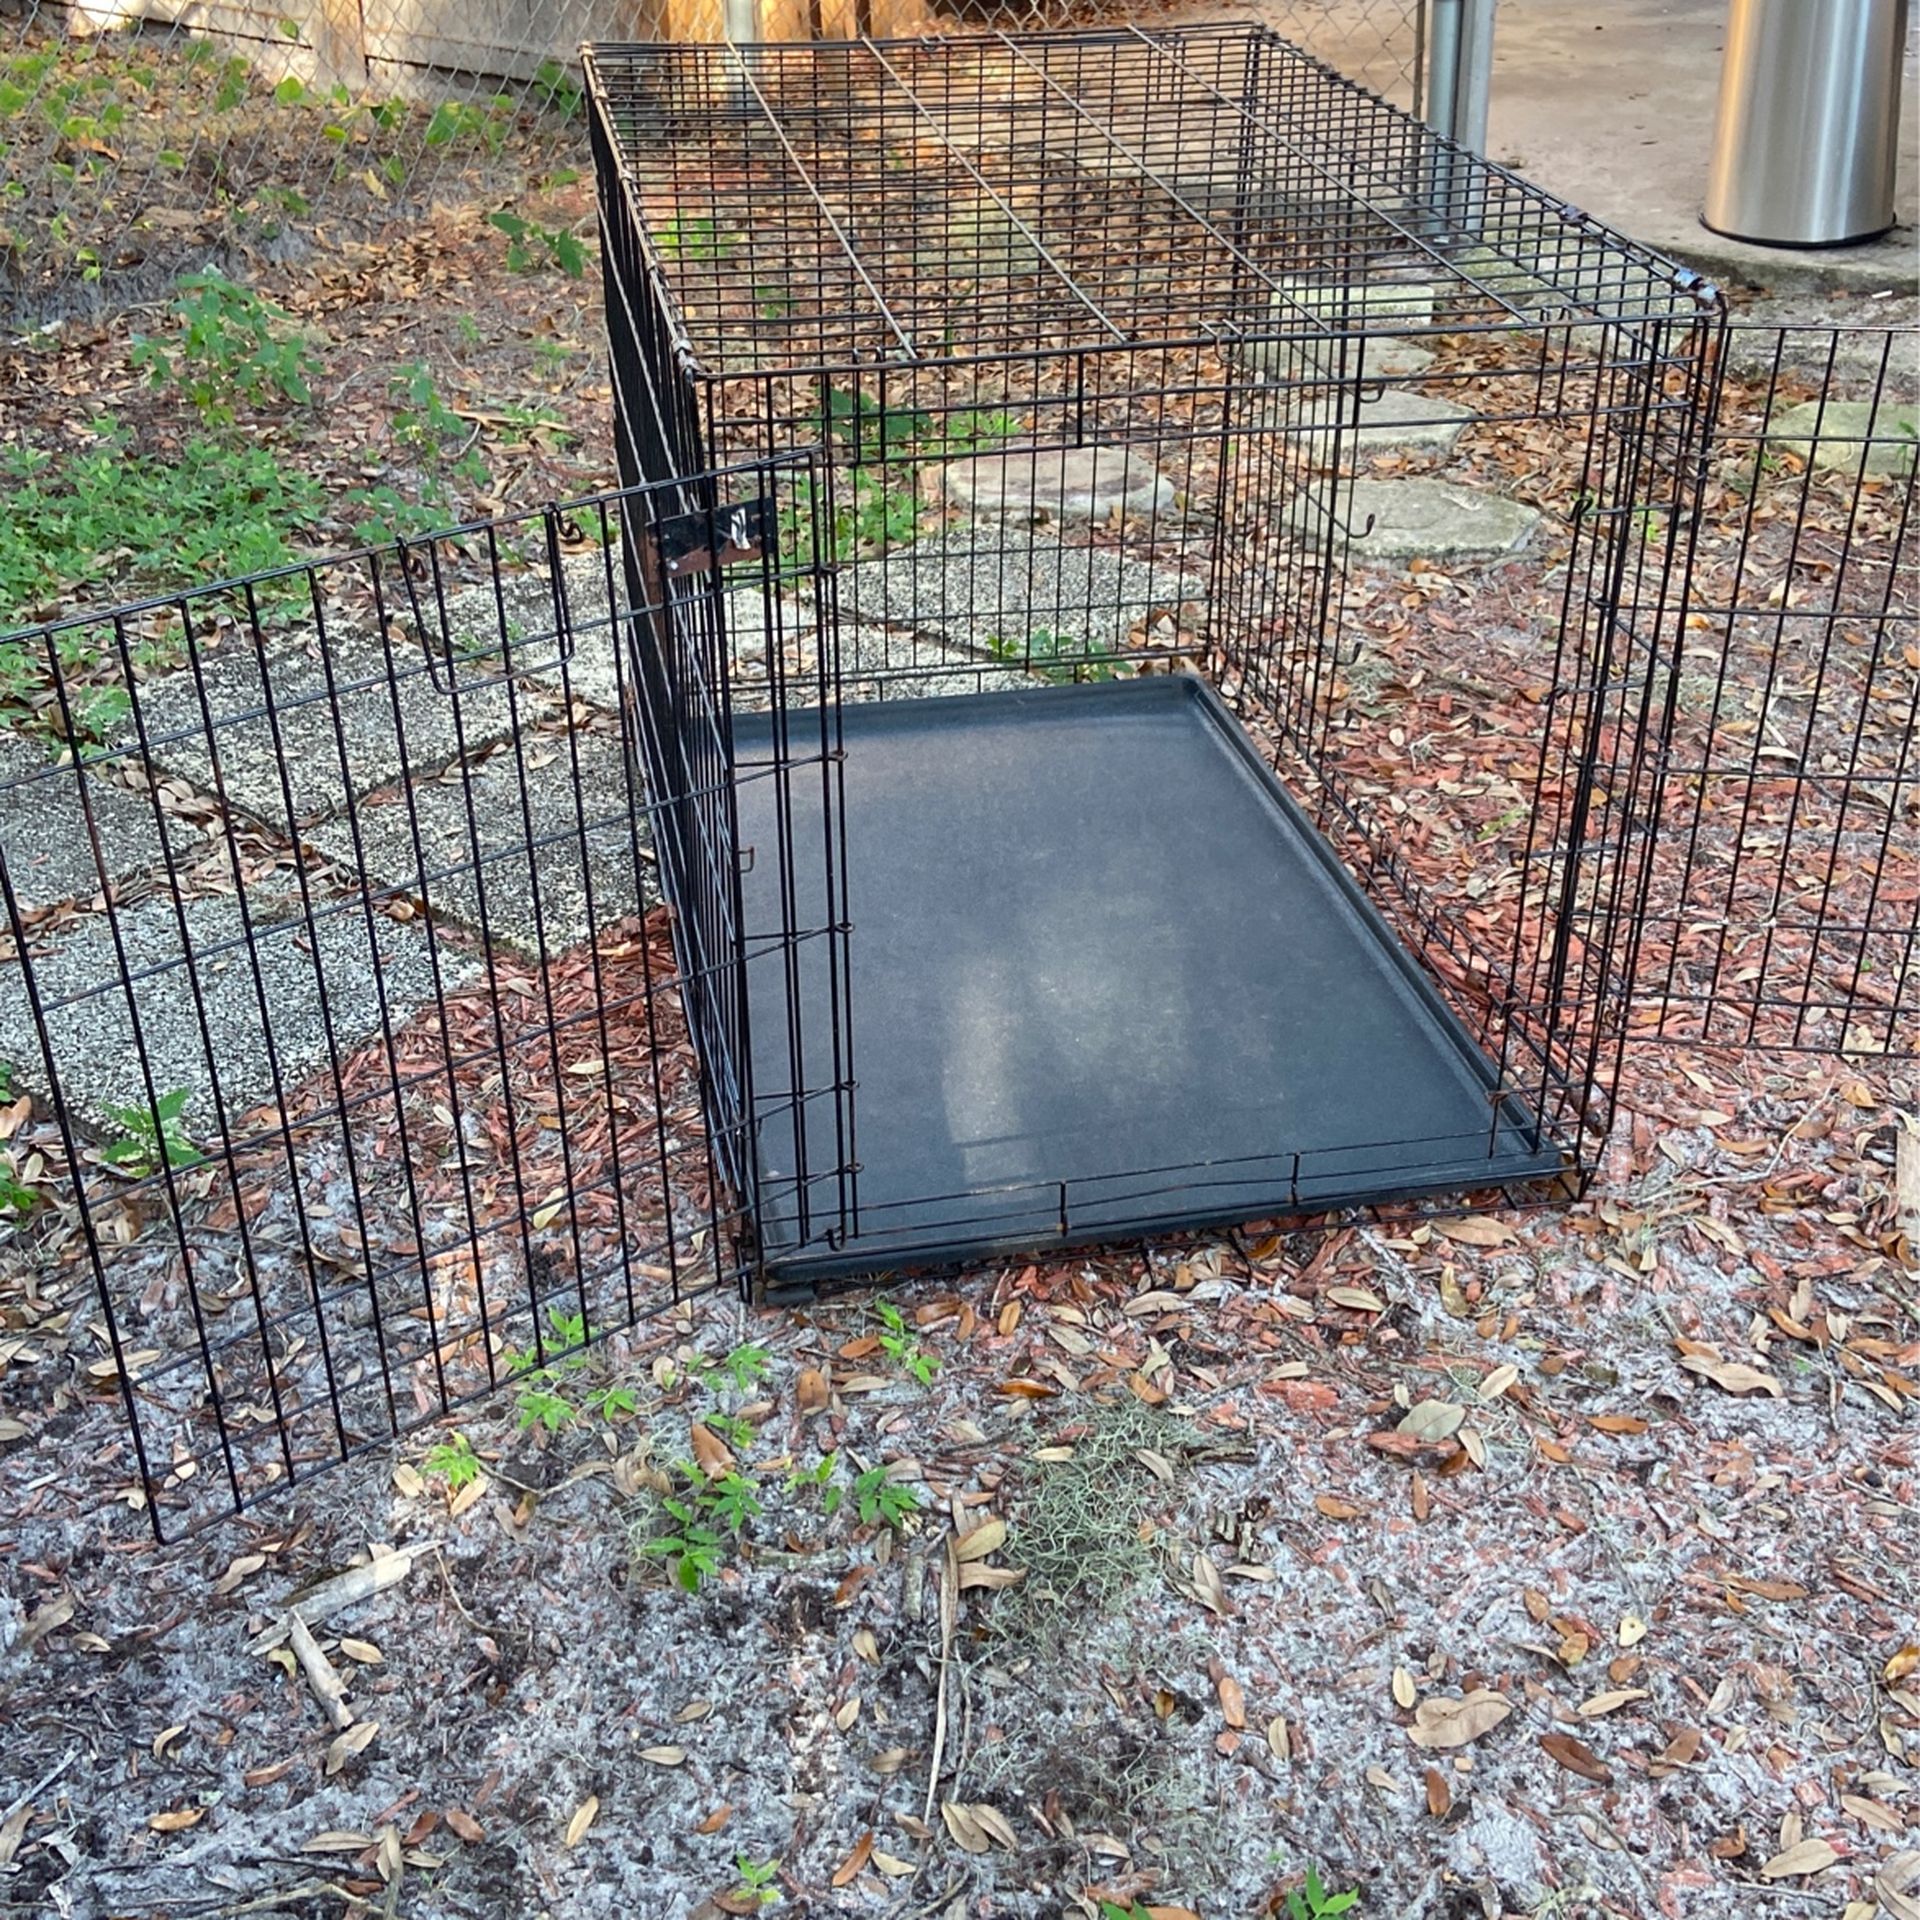 Huge Dog Cage